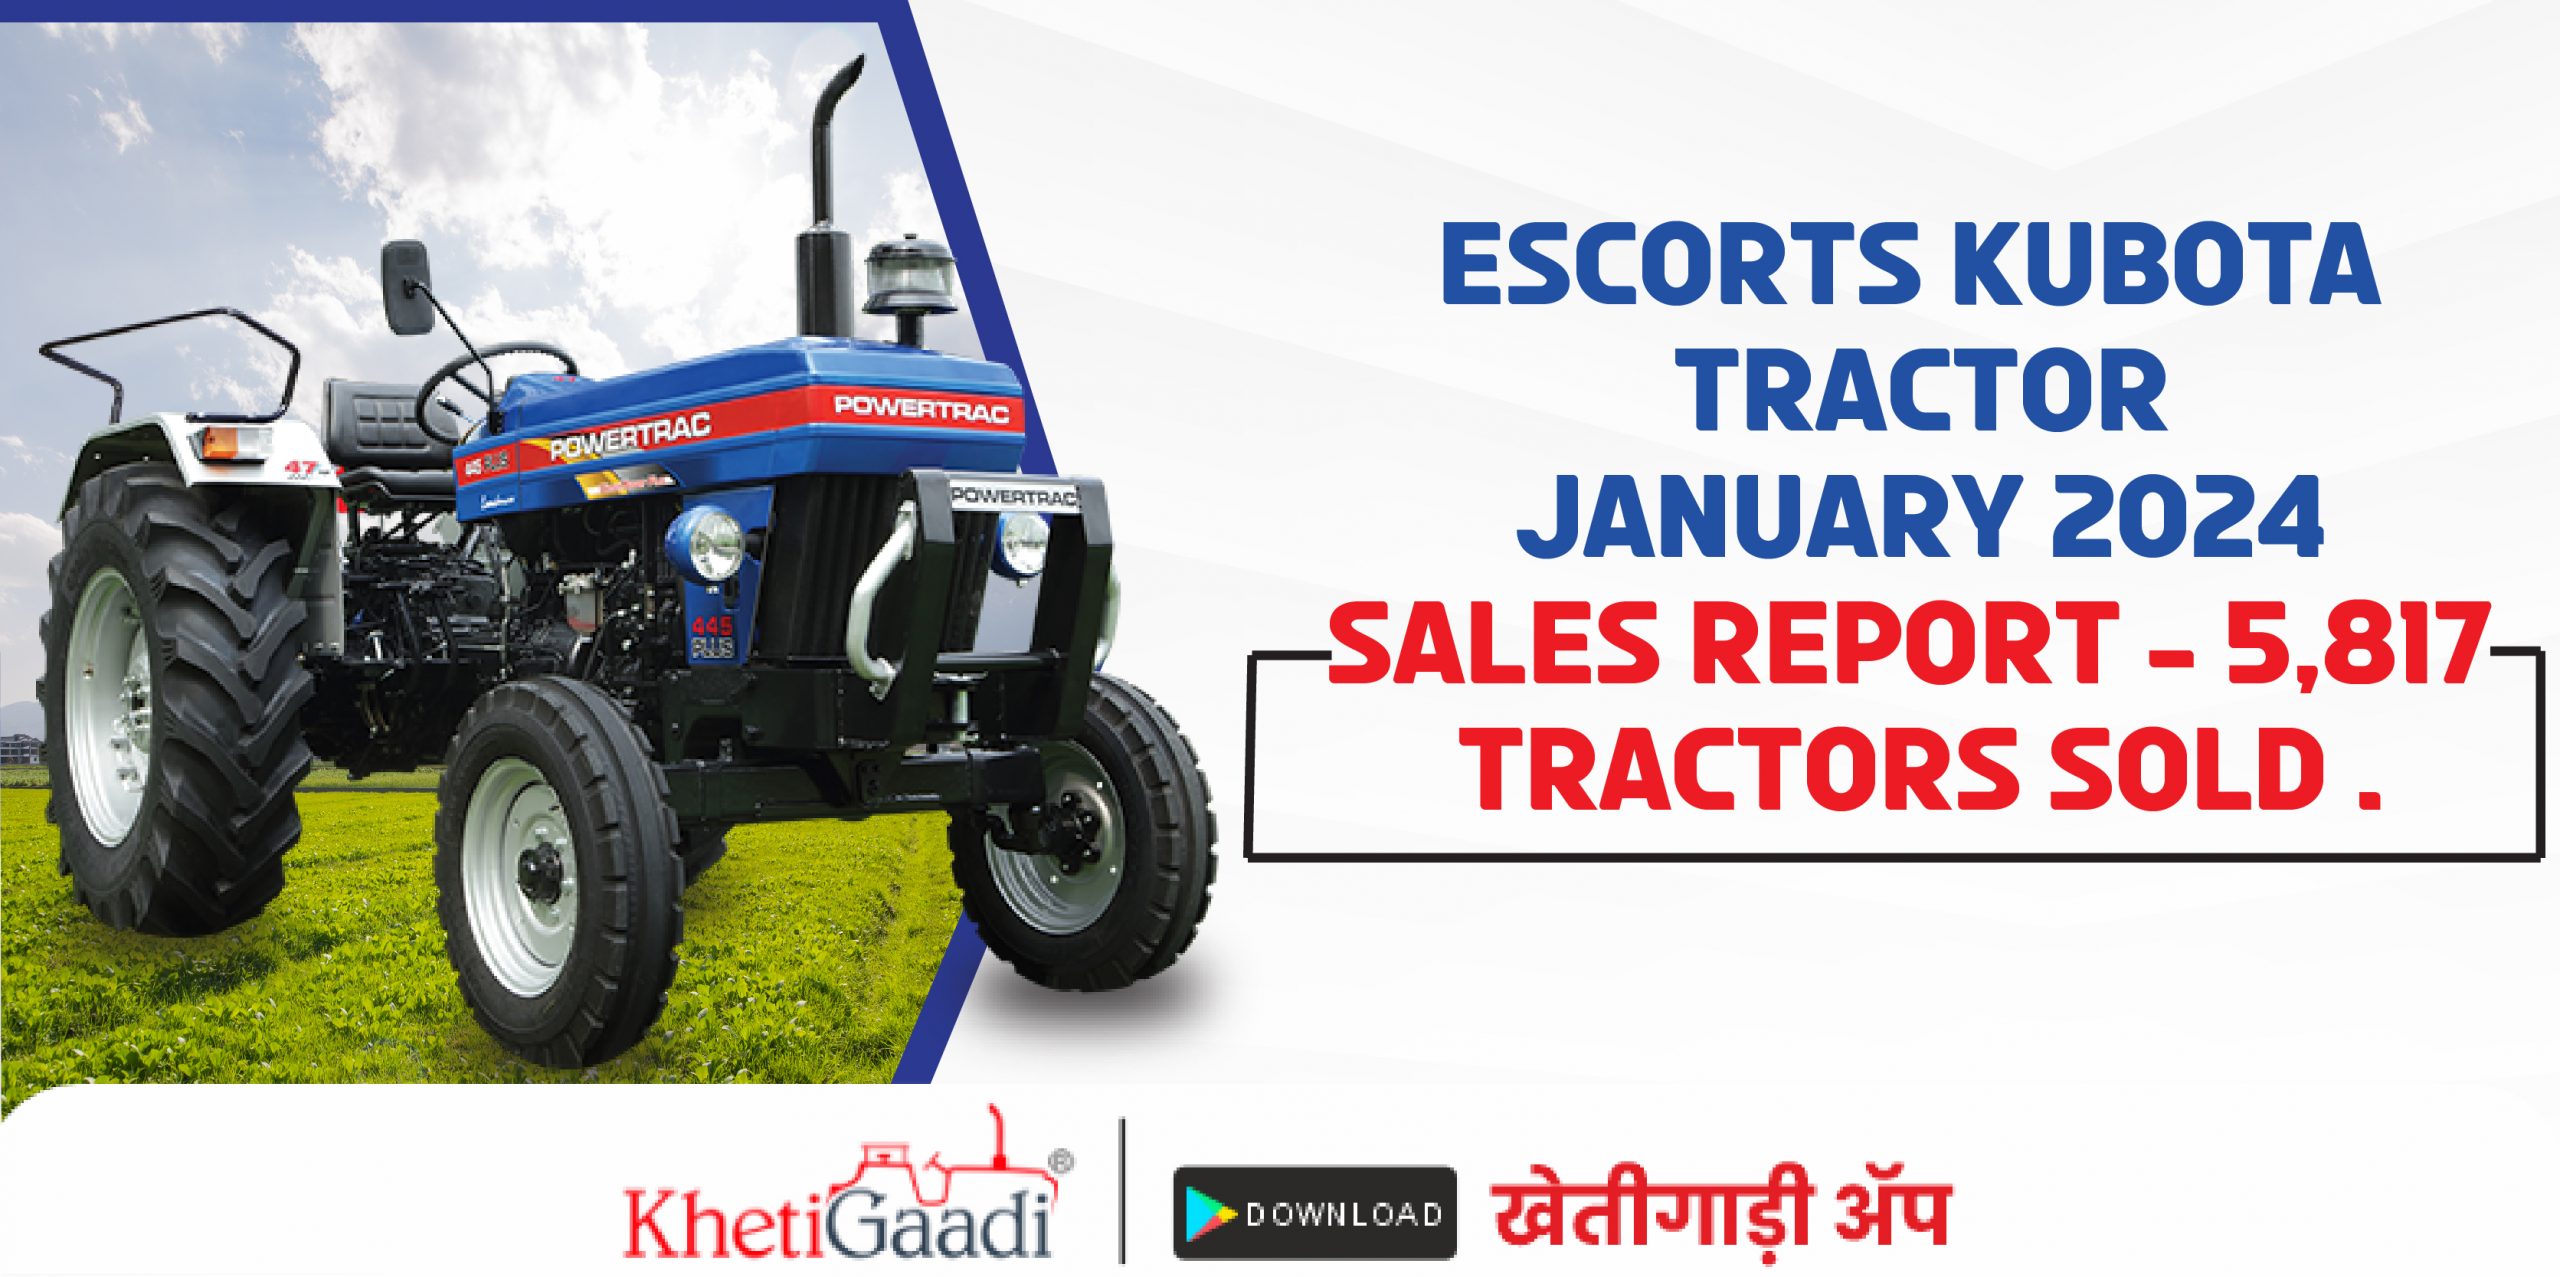 Escort Kubota Tractor January 2024 Sales Report – 5,817 Tractors Sold